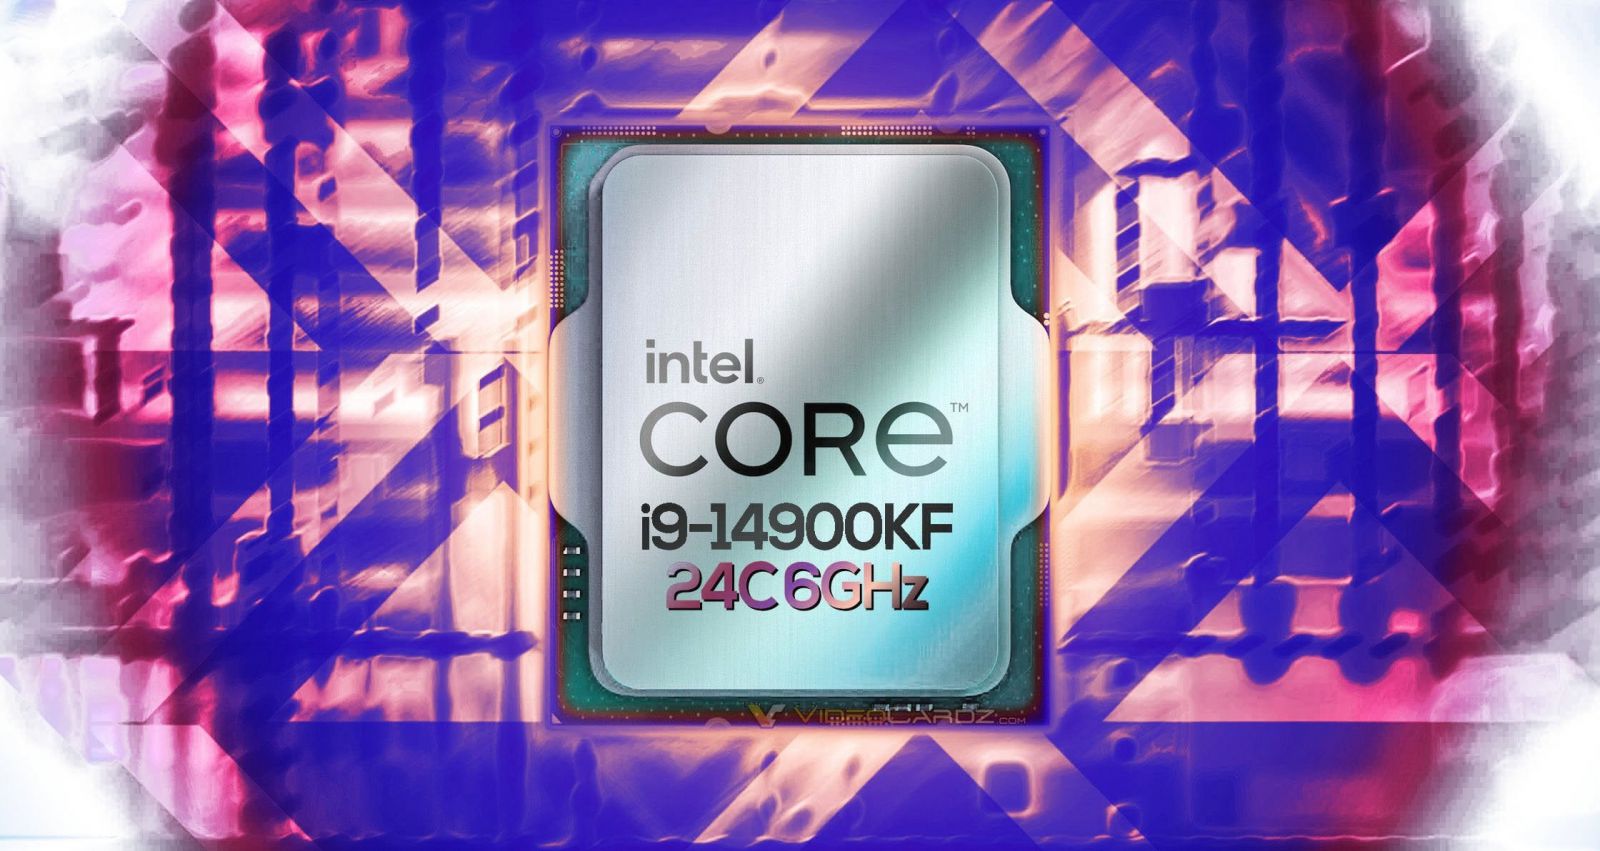 ​VI TÍNH NGUYỄN THẮNG - CPU INTEL CORE I9-14900KF (UP TO 5.8GHZ, 24 NHÂN 32 LUỒNG, 36MB CACHE, 125W) - SOCKET INTEL LGA 1700​